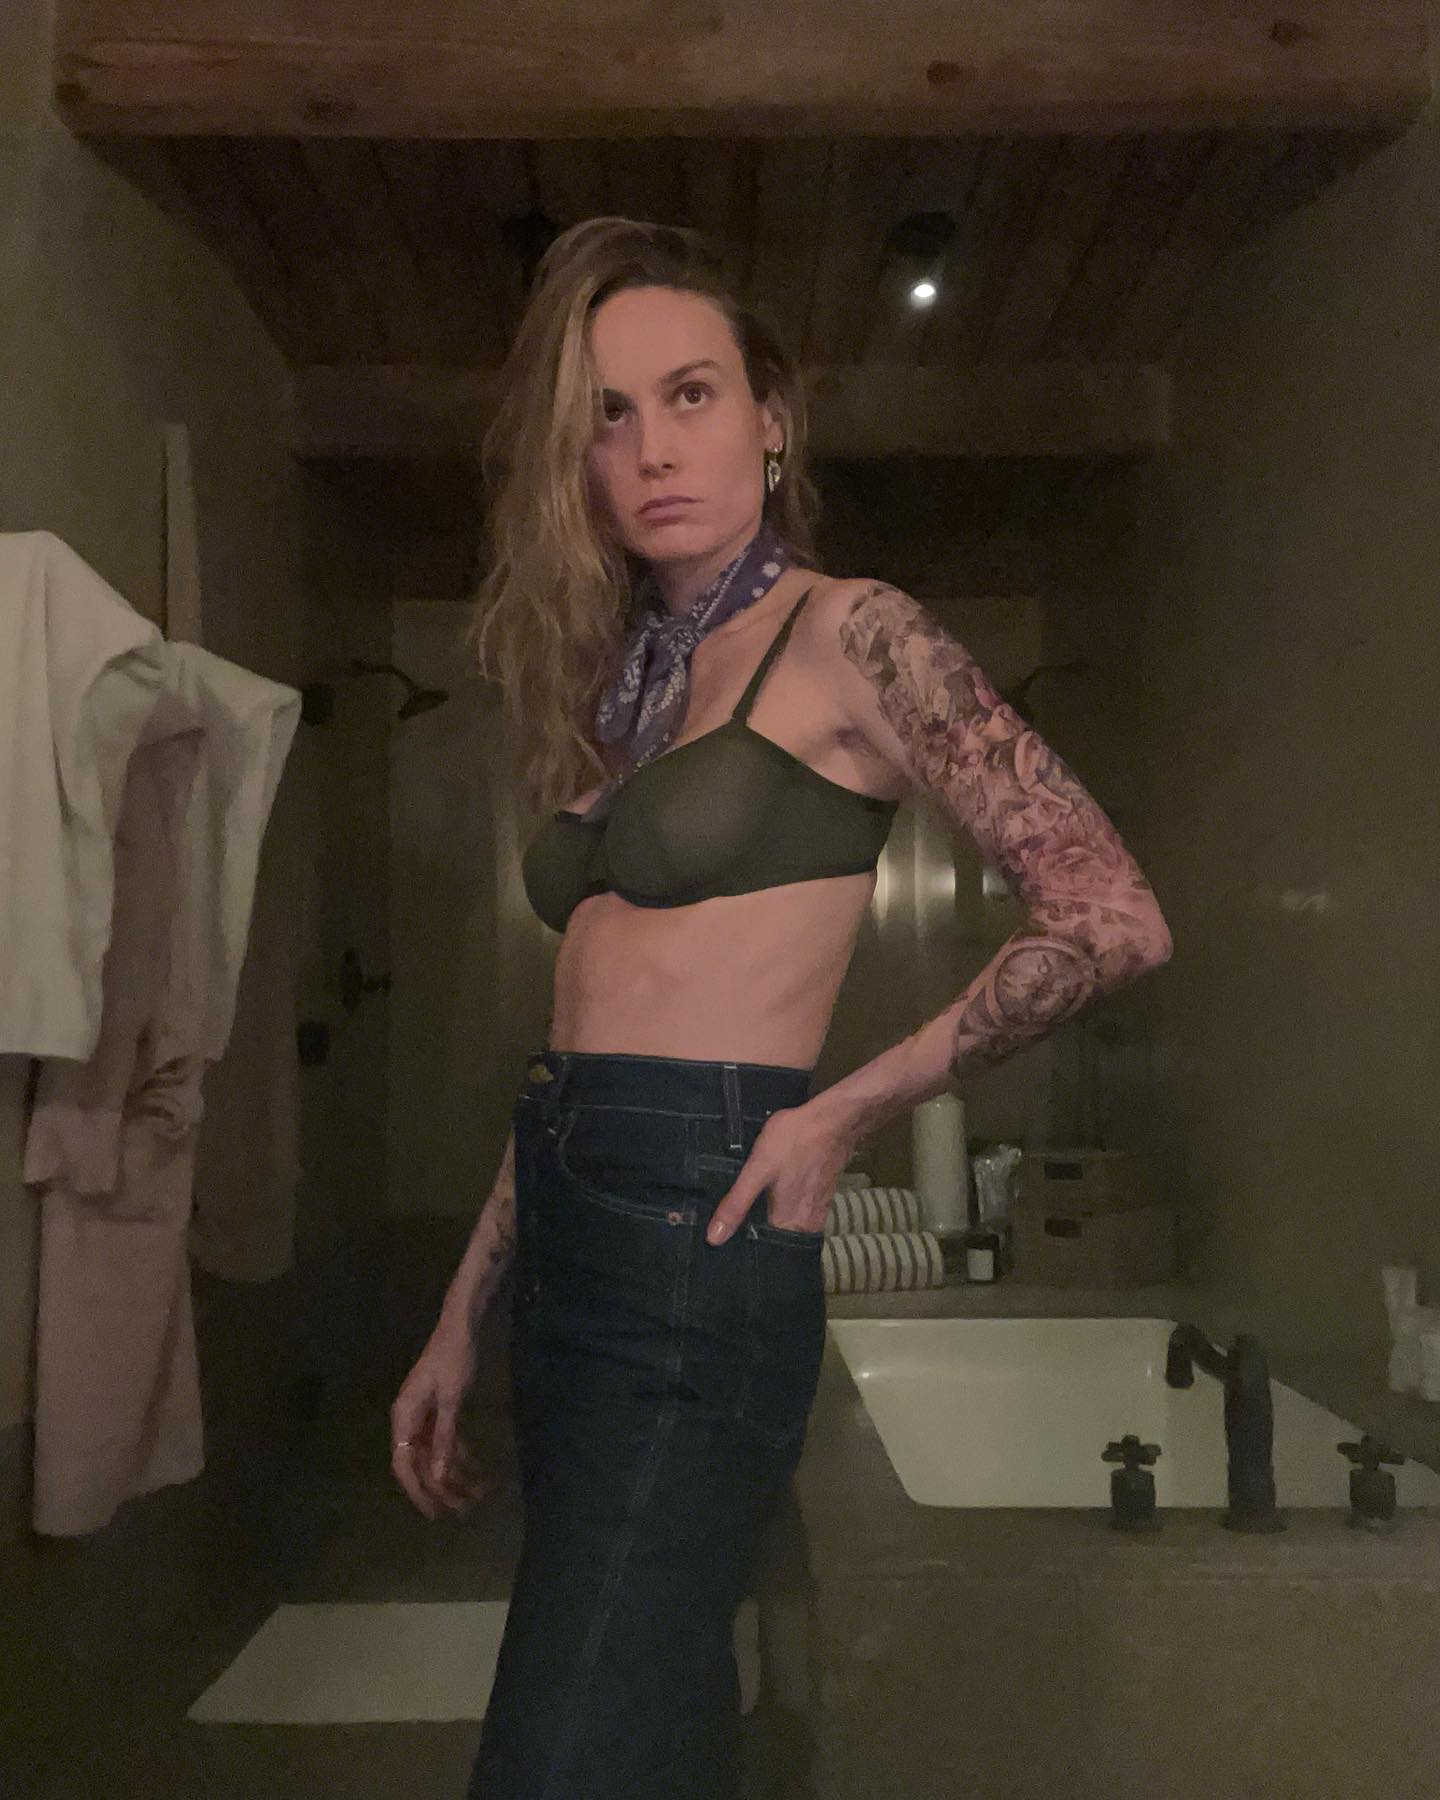 Fotos n°1 : Brie Larson muestra sus tatuajes en un sujetador!